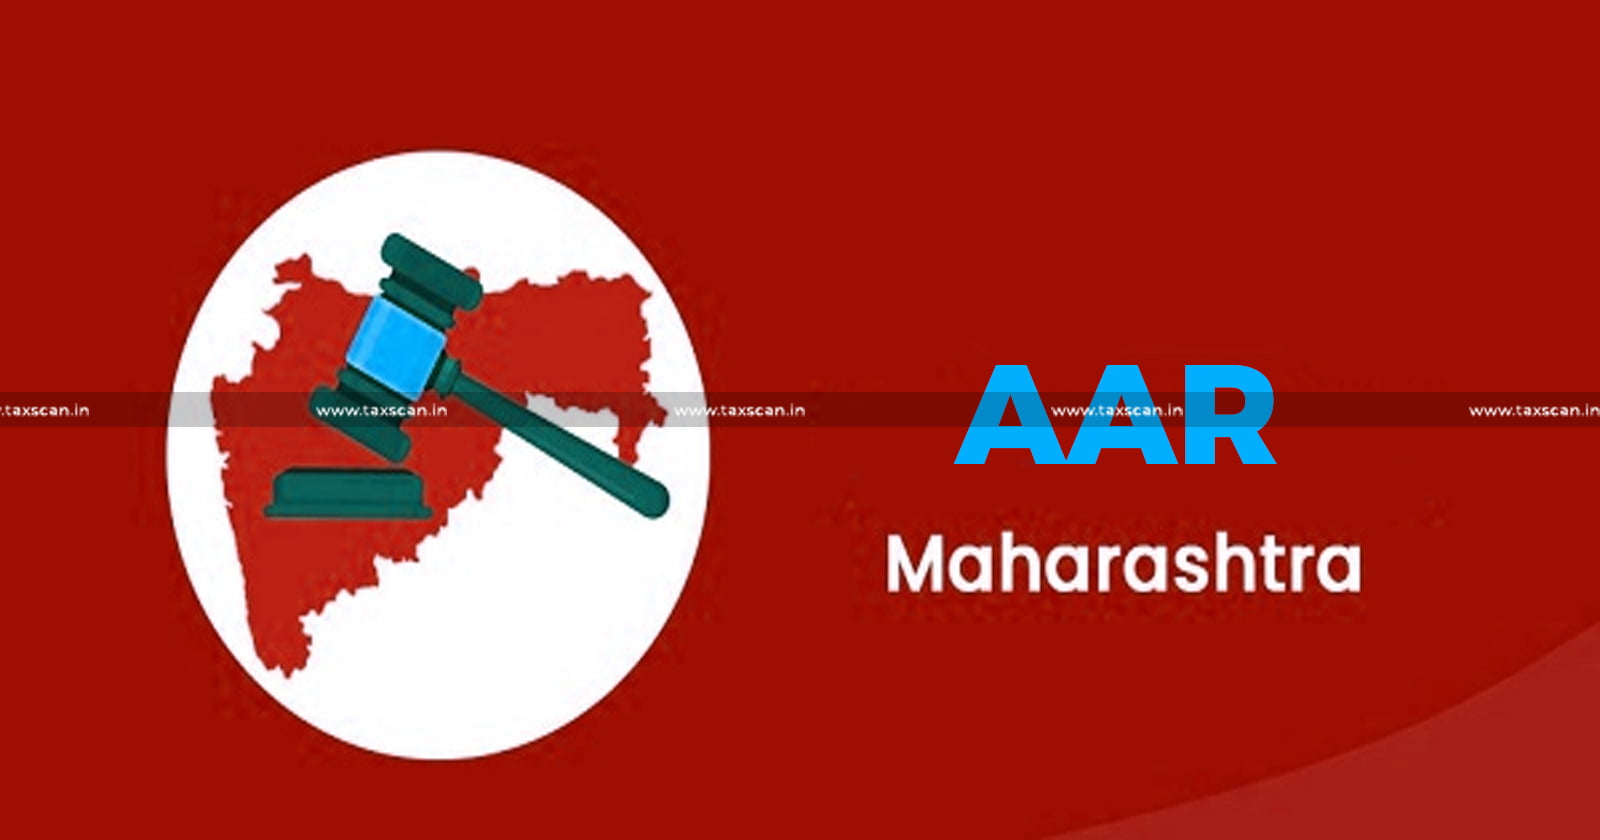 Case Digest of Maharashtra AAR - Case Digest - Maharashtra AAR - Case Digest of AAR - Advance Ruling Authority - Advance Ruling Authority - Maharashtra Authority of Advance Ruling - taxscan